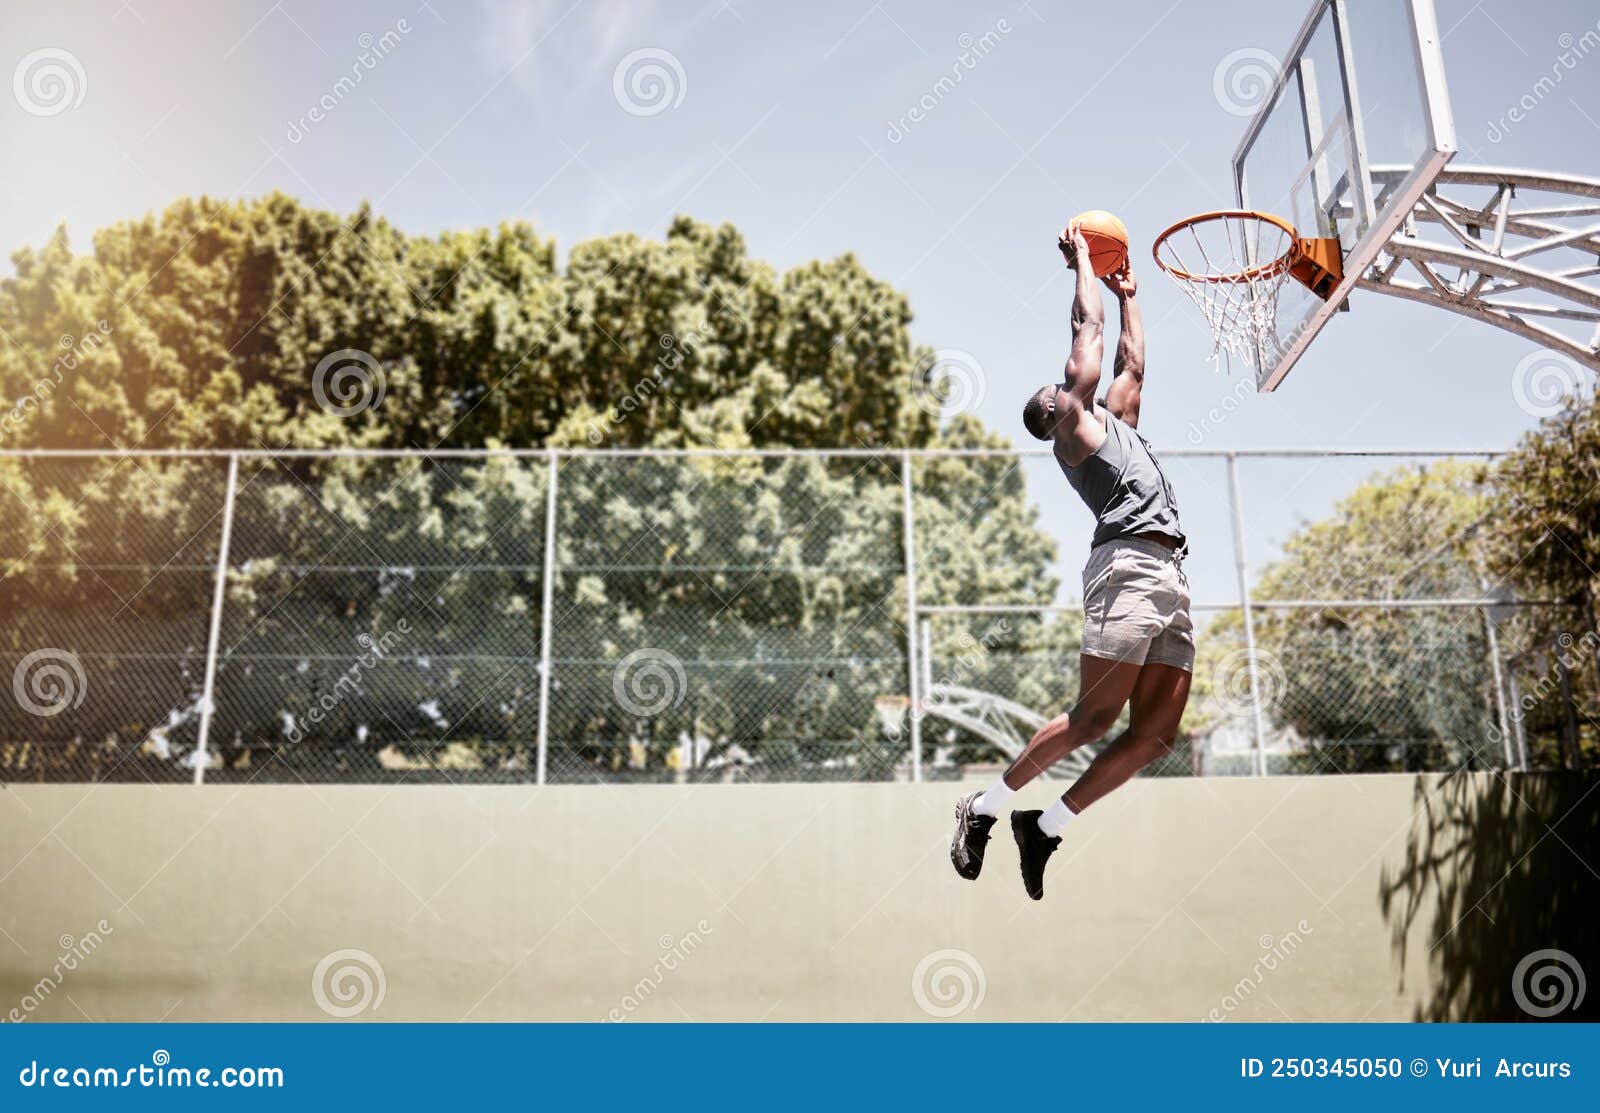 Longitud Completa Del Jugador De Baloncesto Que Le Da Una Pelota a La Red  Durante Un Partido En Una Cancha. Saltar a Un Atleta Act Foto de archivo -  Imagen de atleta,